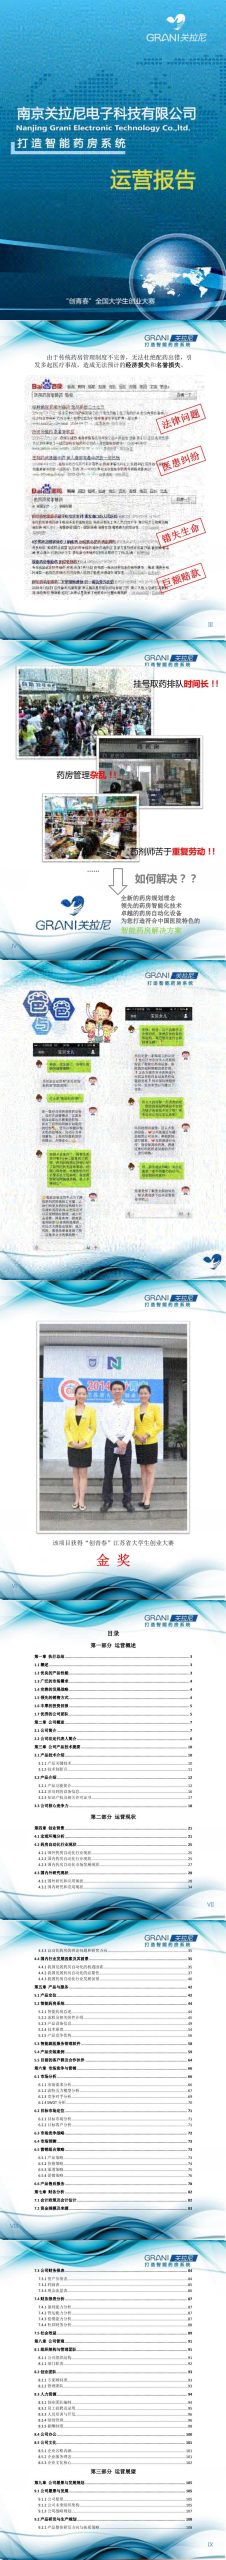 南京关拉尼电子科技有限公司项目运营报告